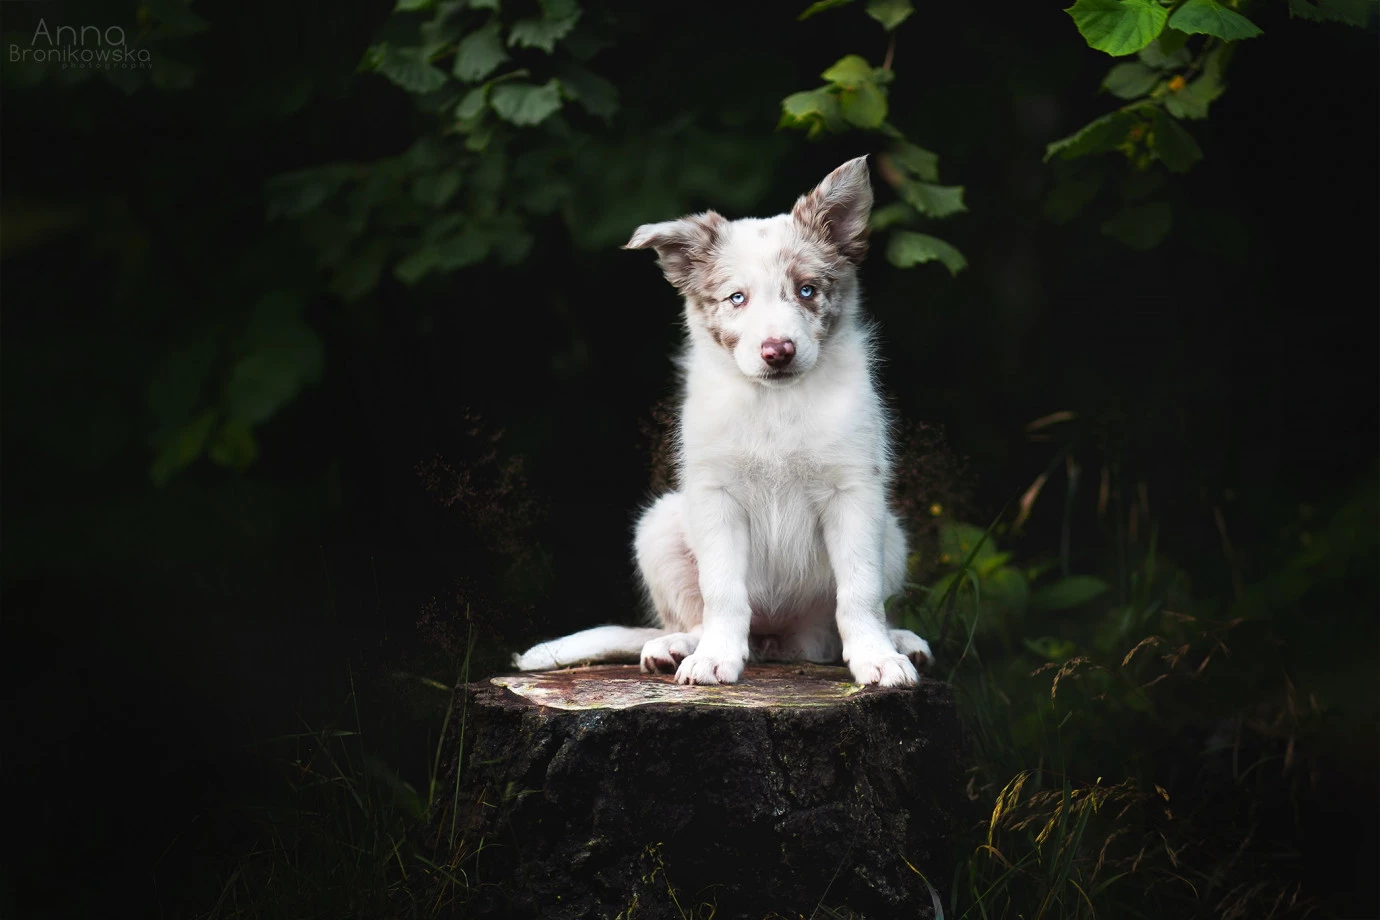 fotograf katowice huskana-fotografia portfolio zdjecia zdjecia zwierzat sesja zdjeciowa konie psy koty